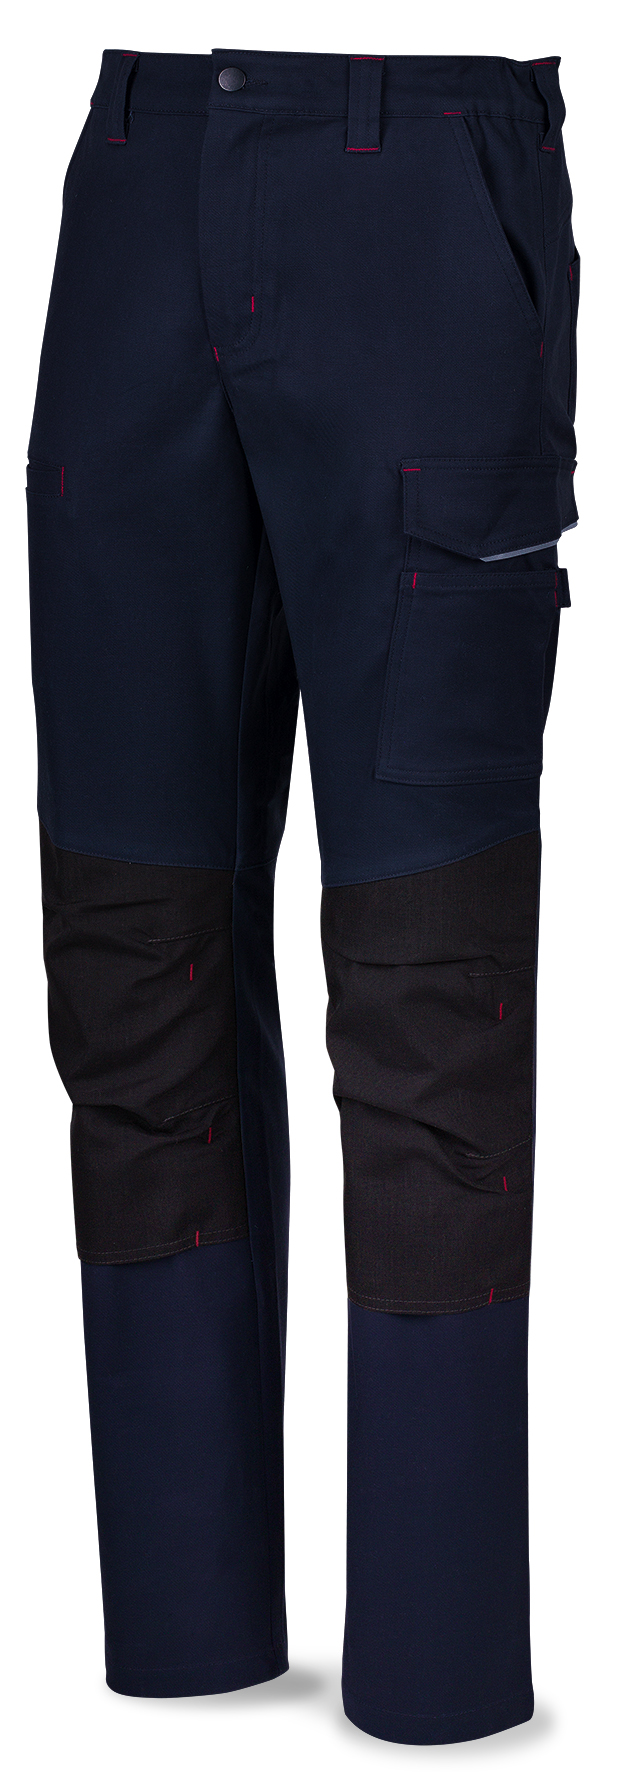 588PSSAM Vetements de travail laboral  Pro Series Pantalon STRETCH bleu marine en polyester/coton 245 gr. Multipoches